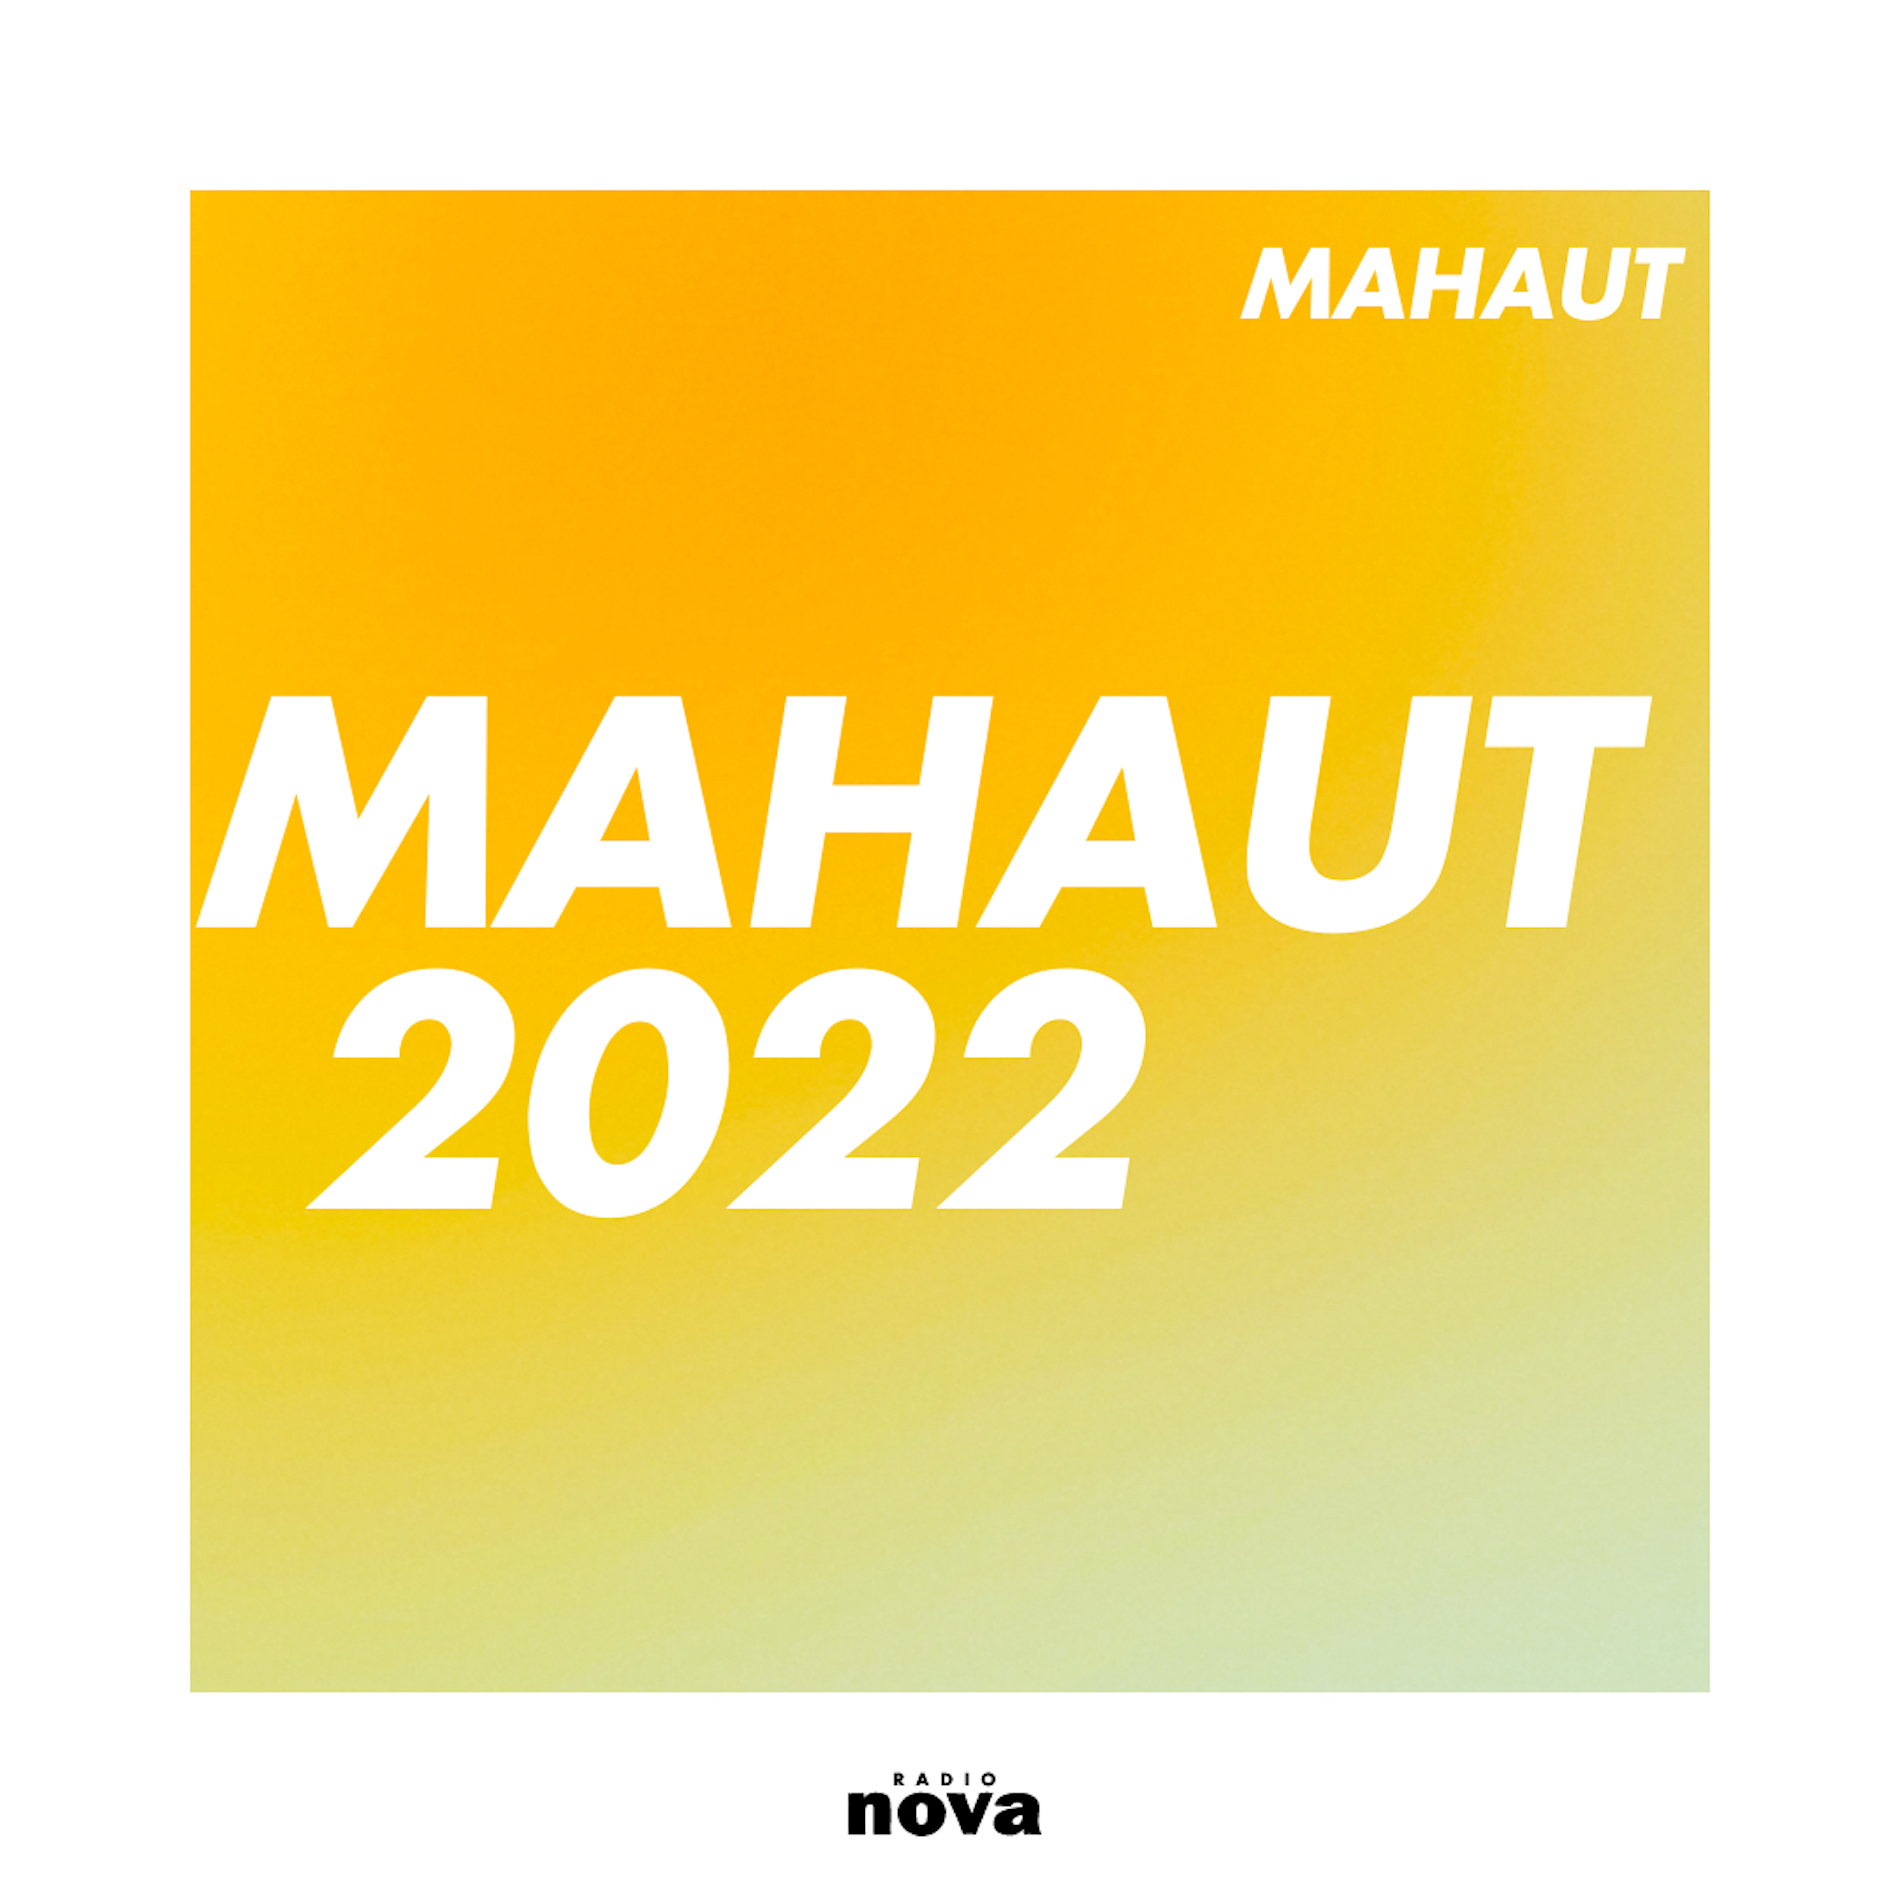 Mahaut 2022